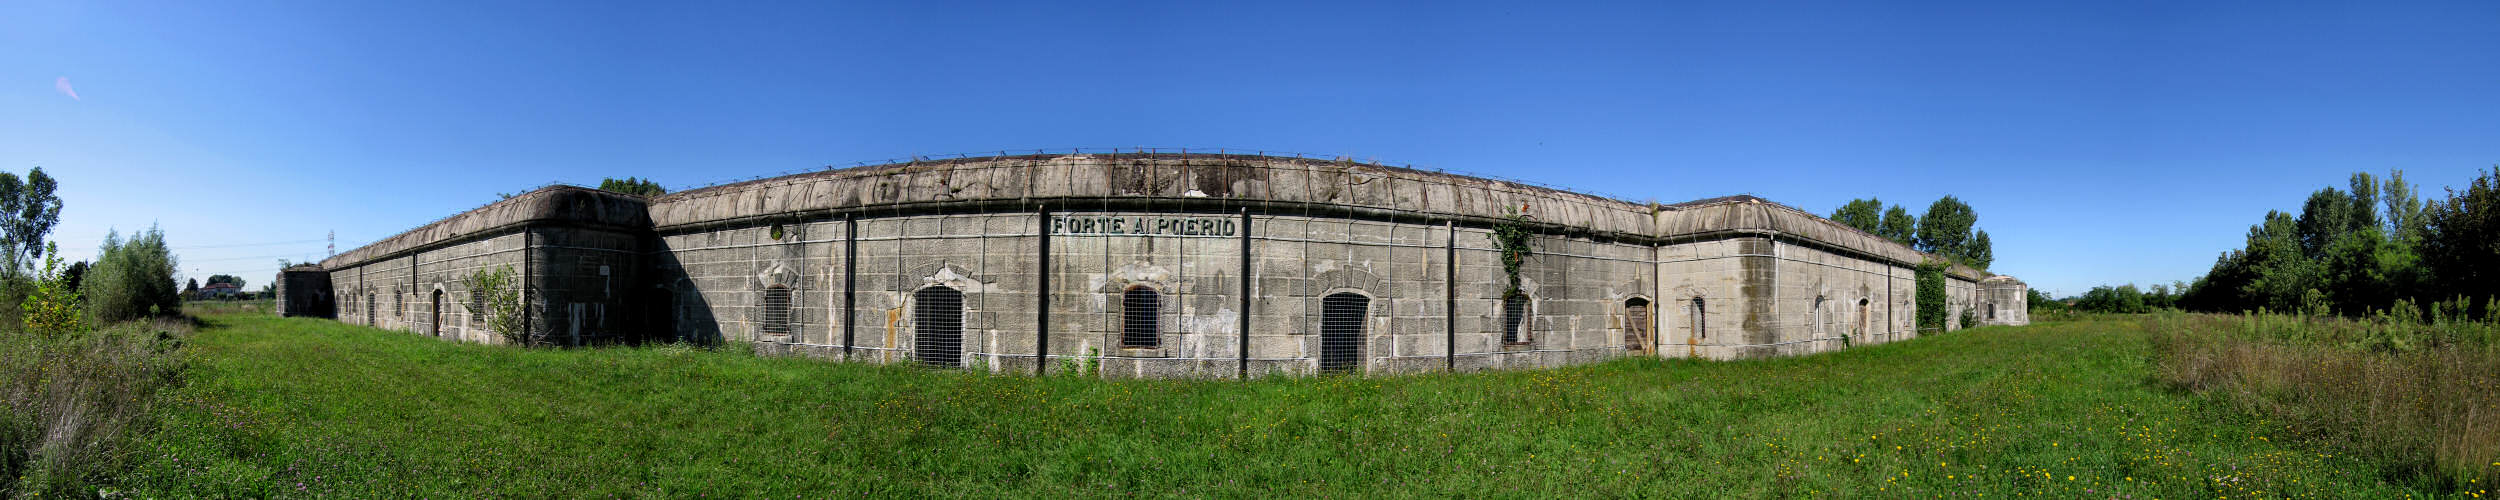 Forte Poerio a Oriago di Mira, Venezia